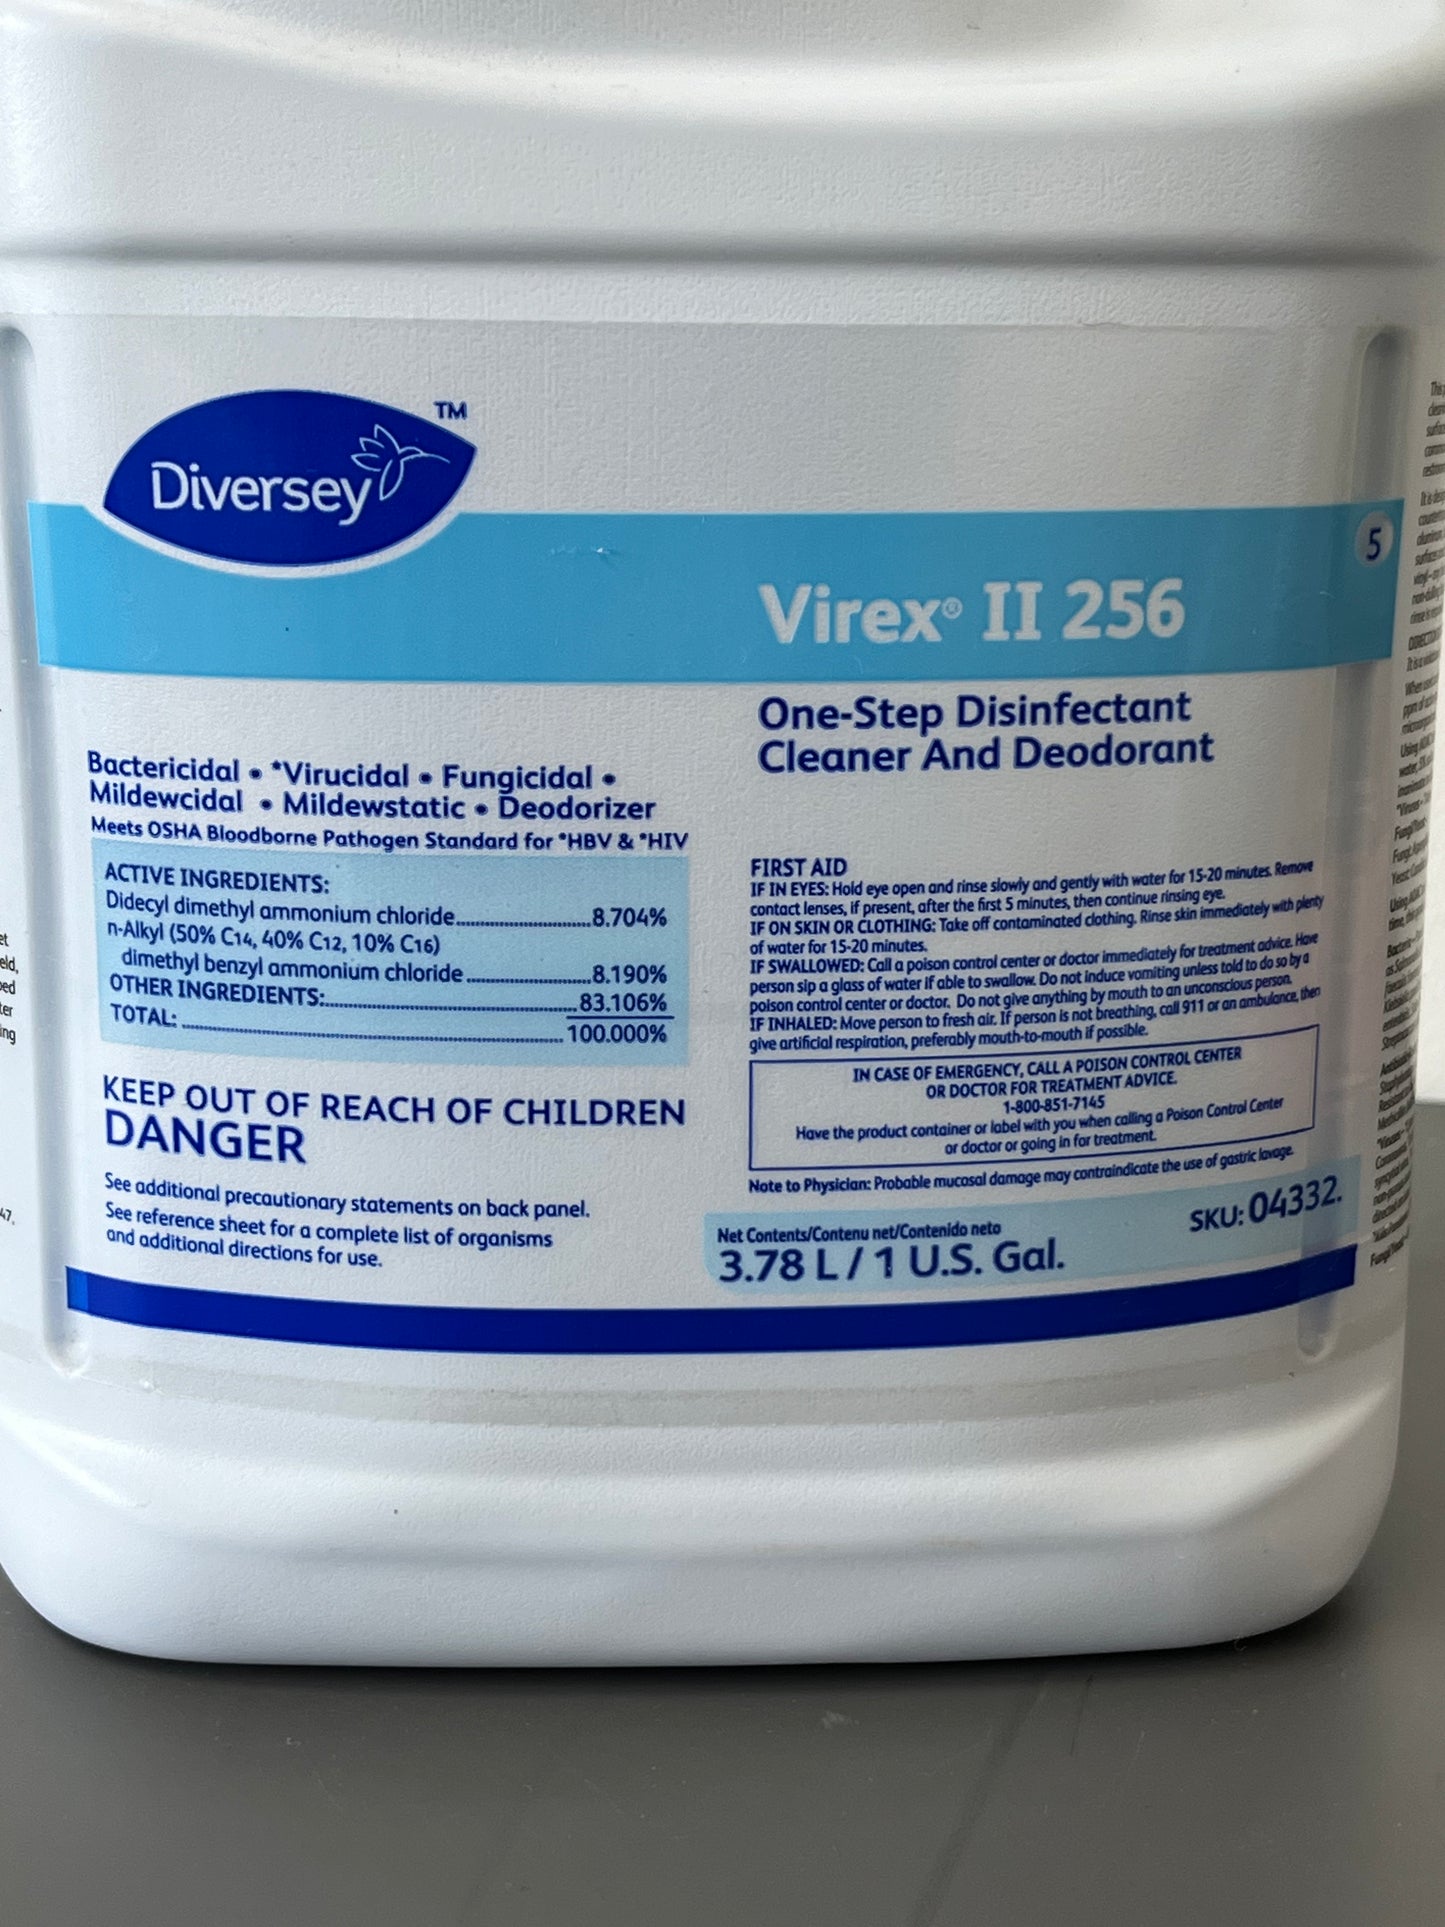 Virex Disinfectant Cleaner & Deodorant